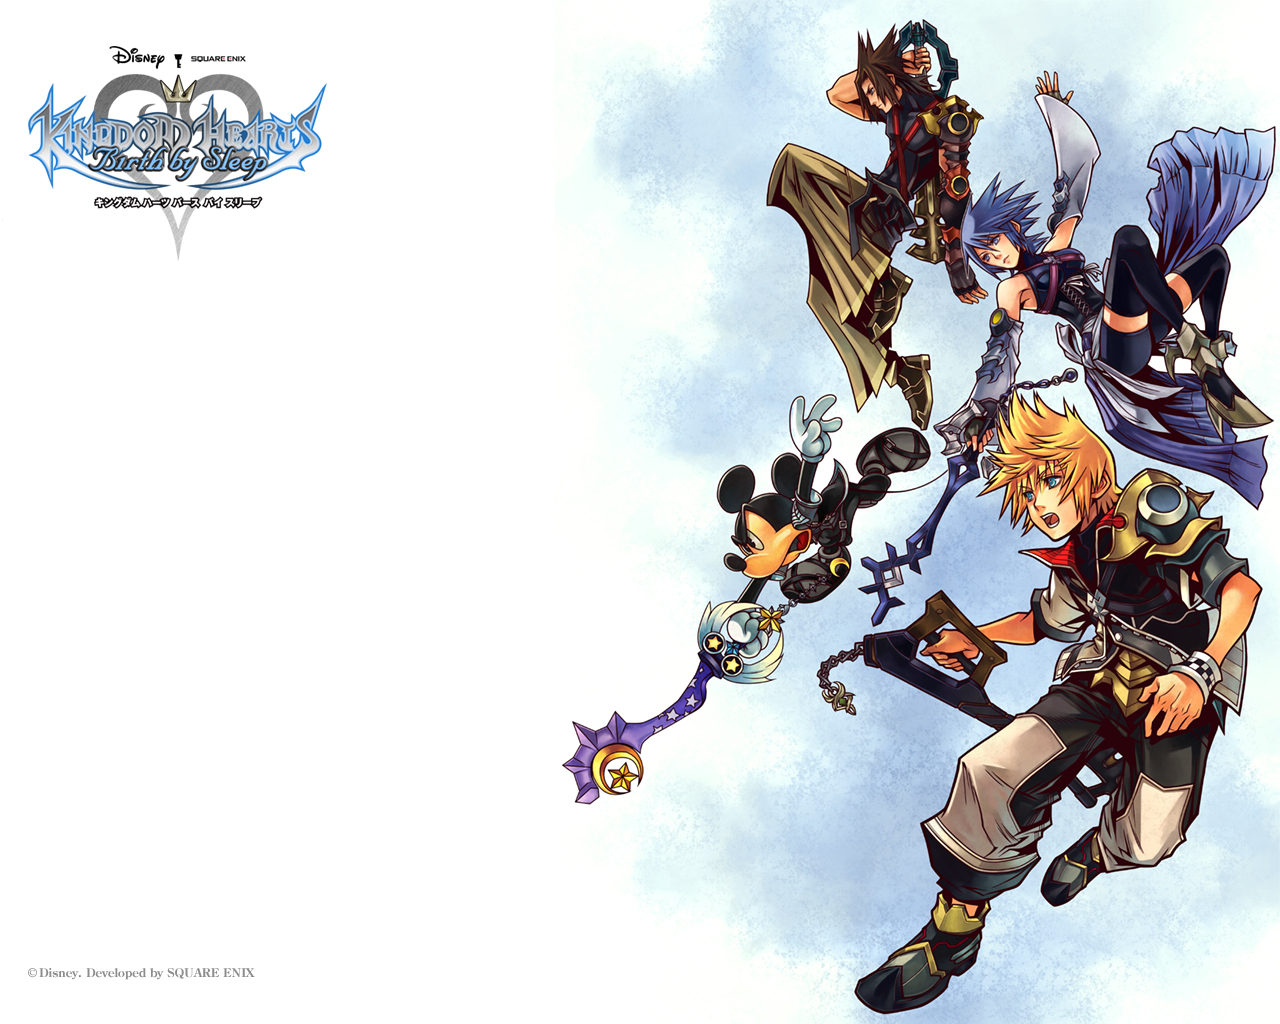 2. Kingdom Hearts: Birth by Sleep